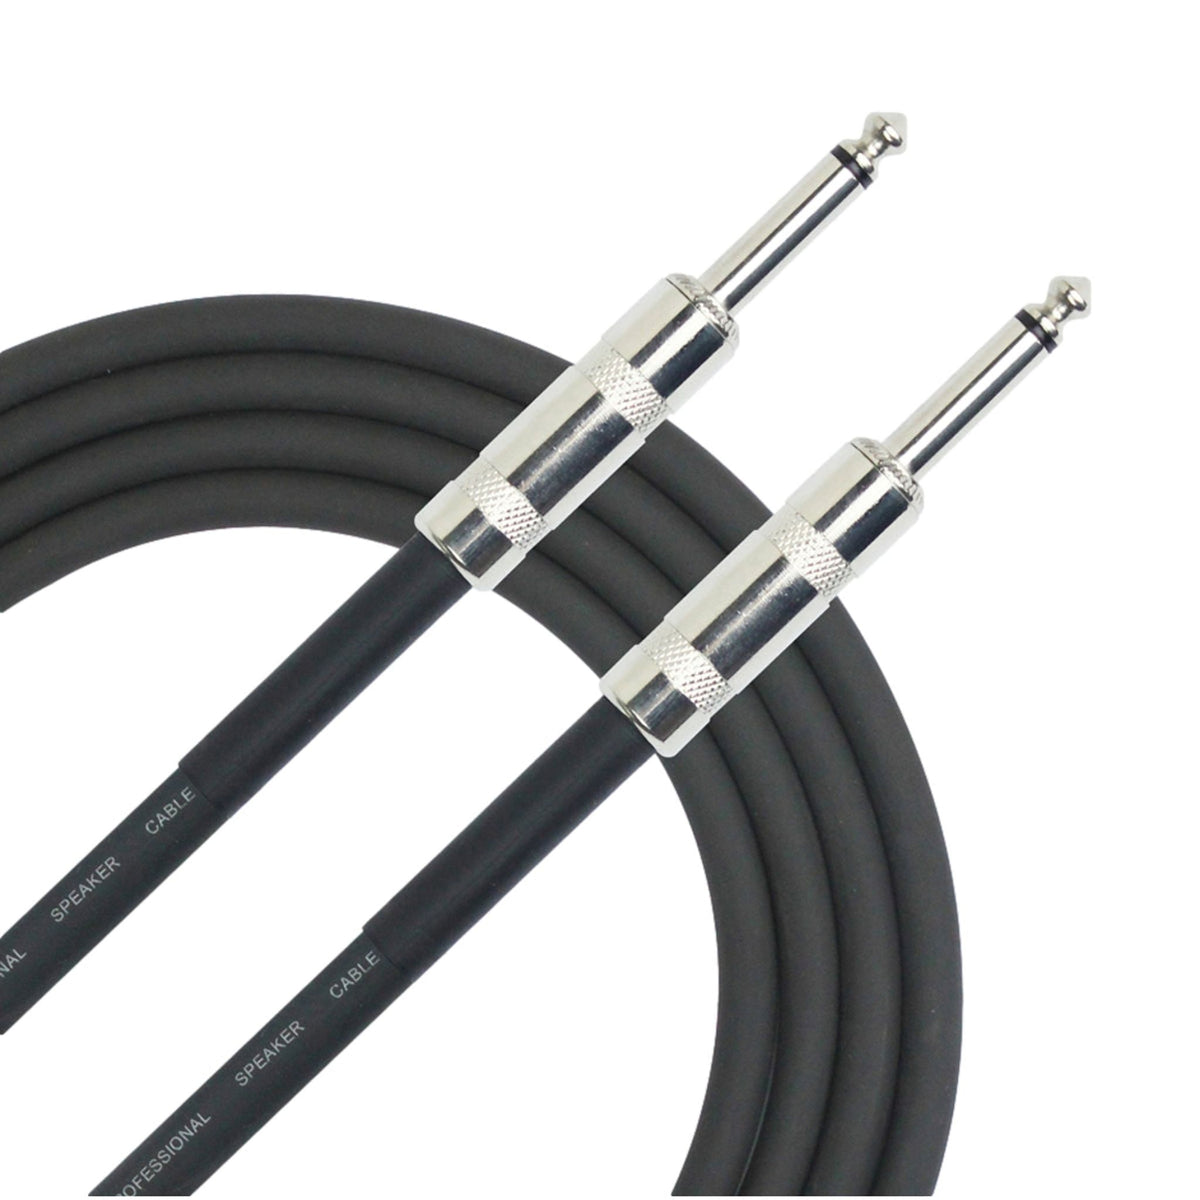 Kirlin 20ft Black 6.5mm Speaker Cable